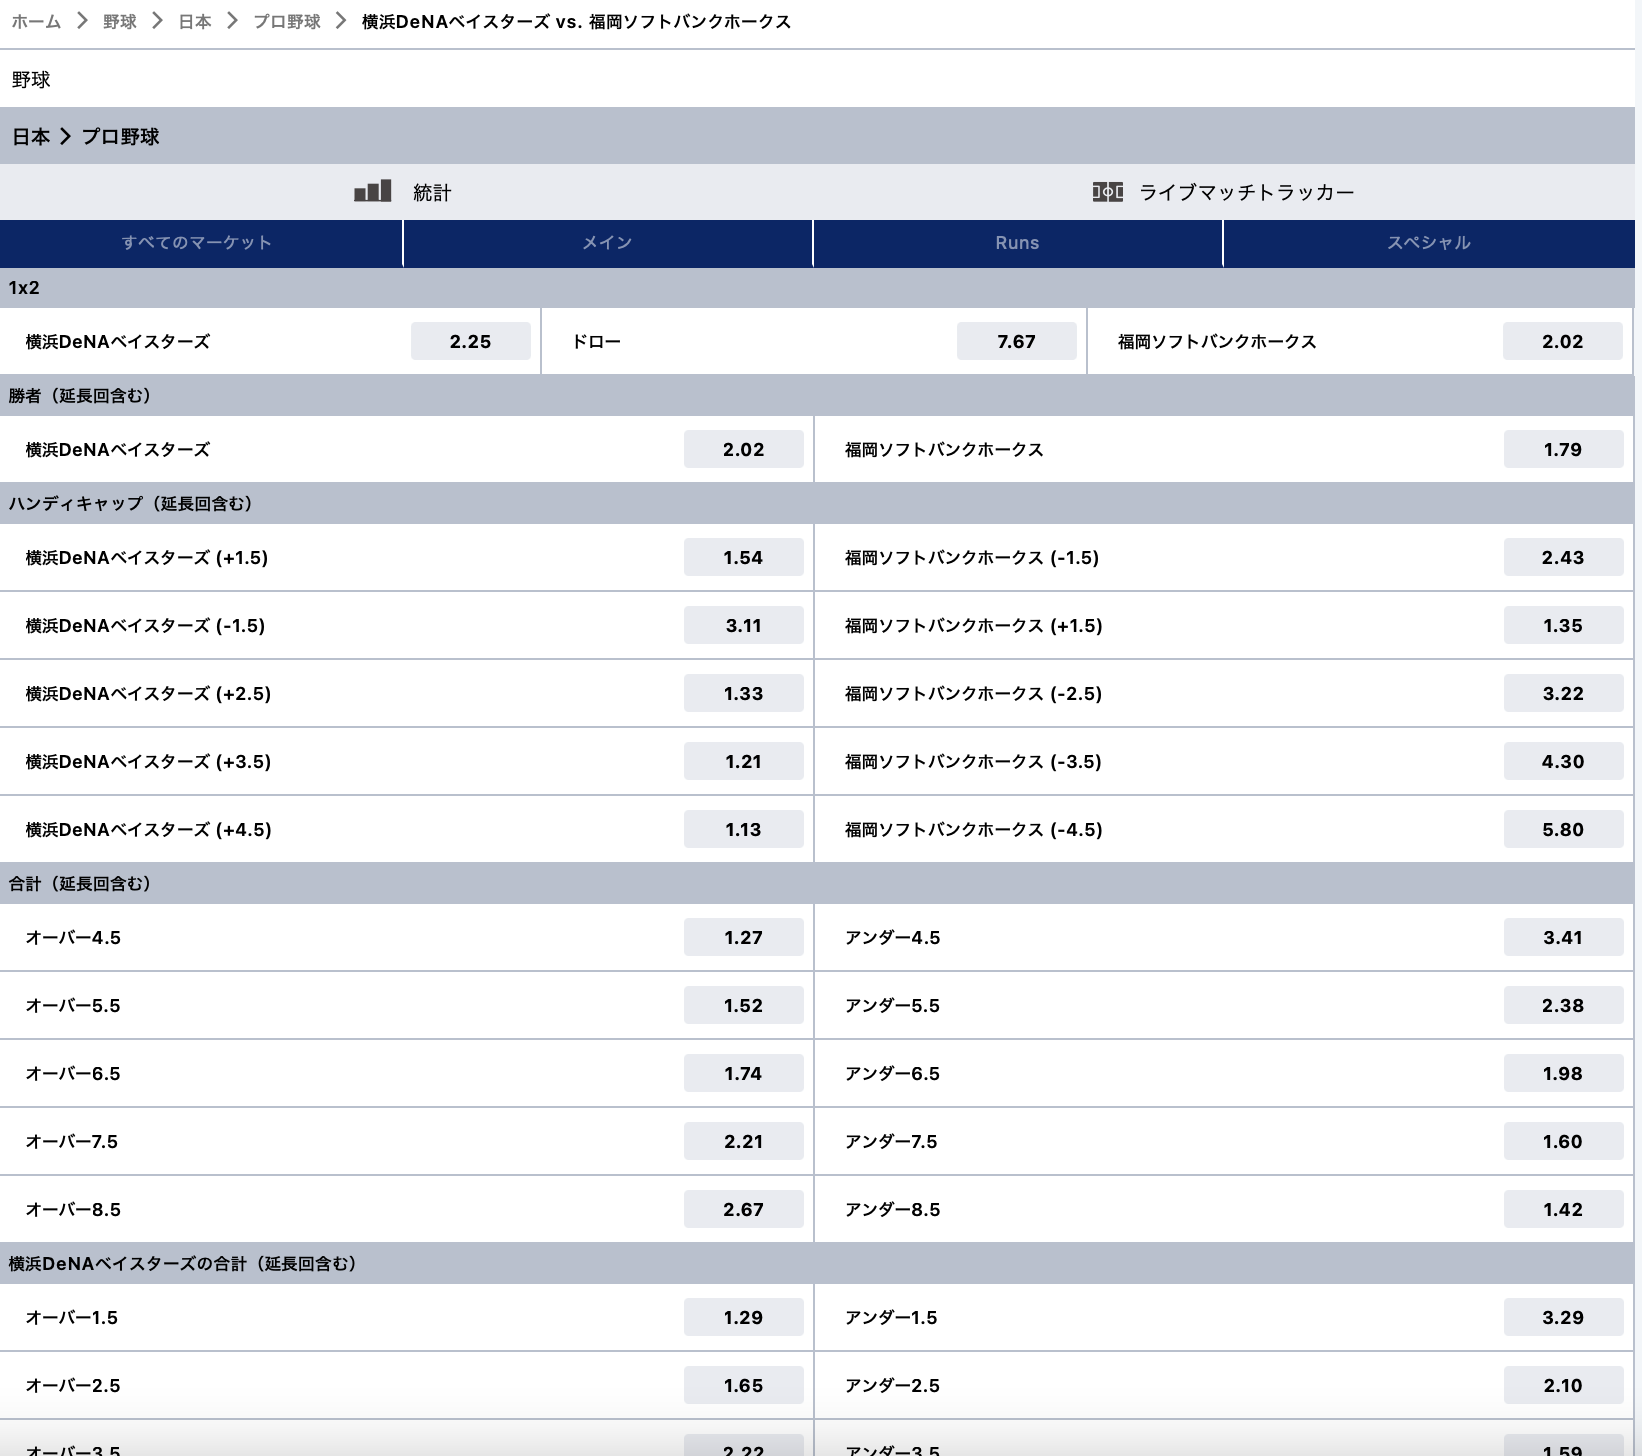 横浜DeNAベイスターズ対ソフトバンクホークス2022.5.24 プロ野球ブックメーカーオッズ・賭けリン